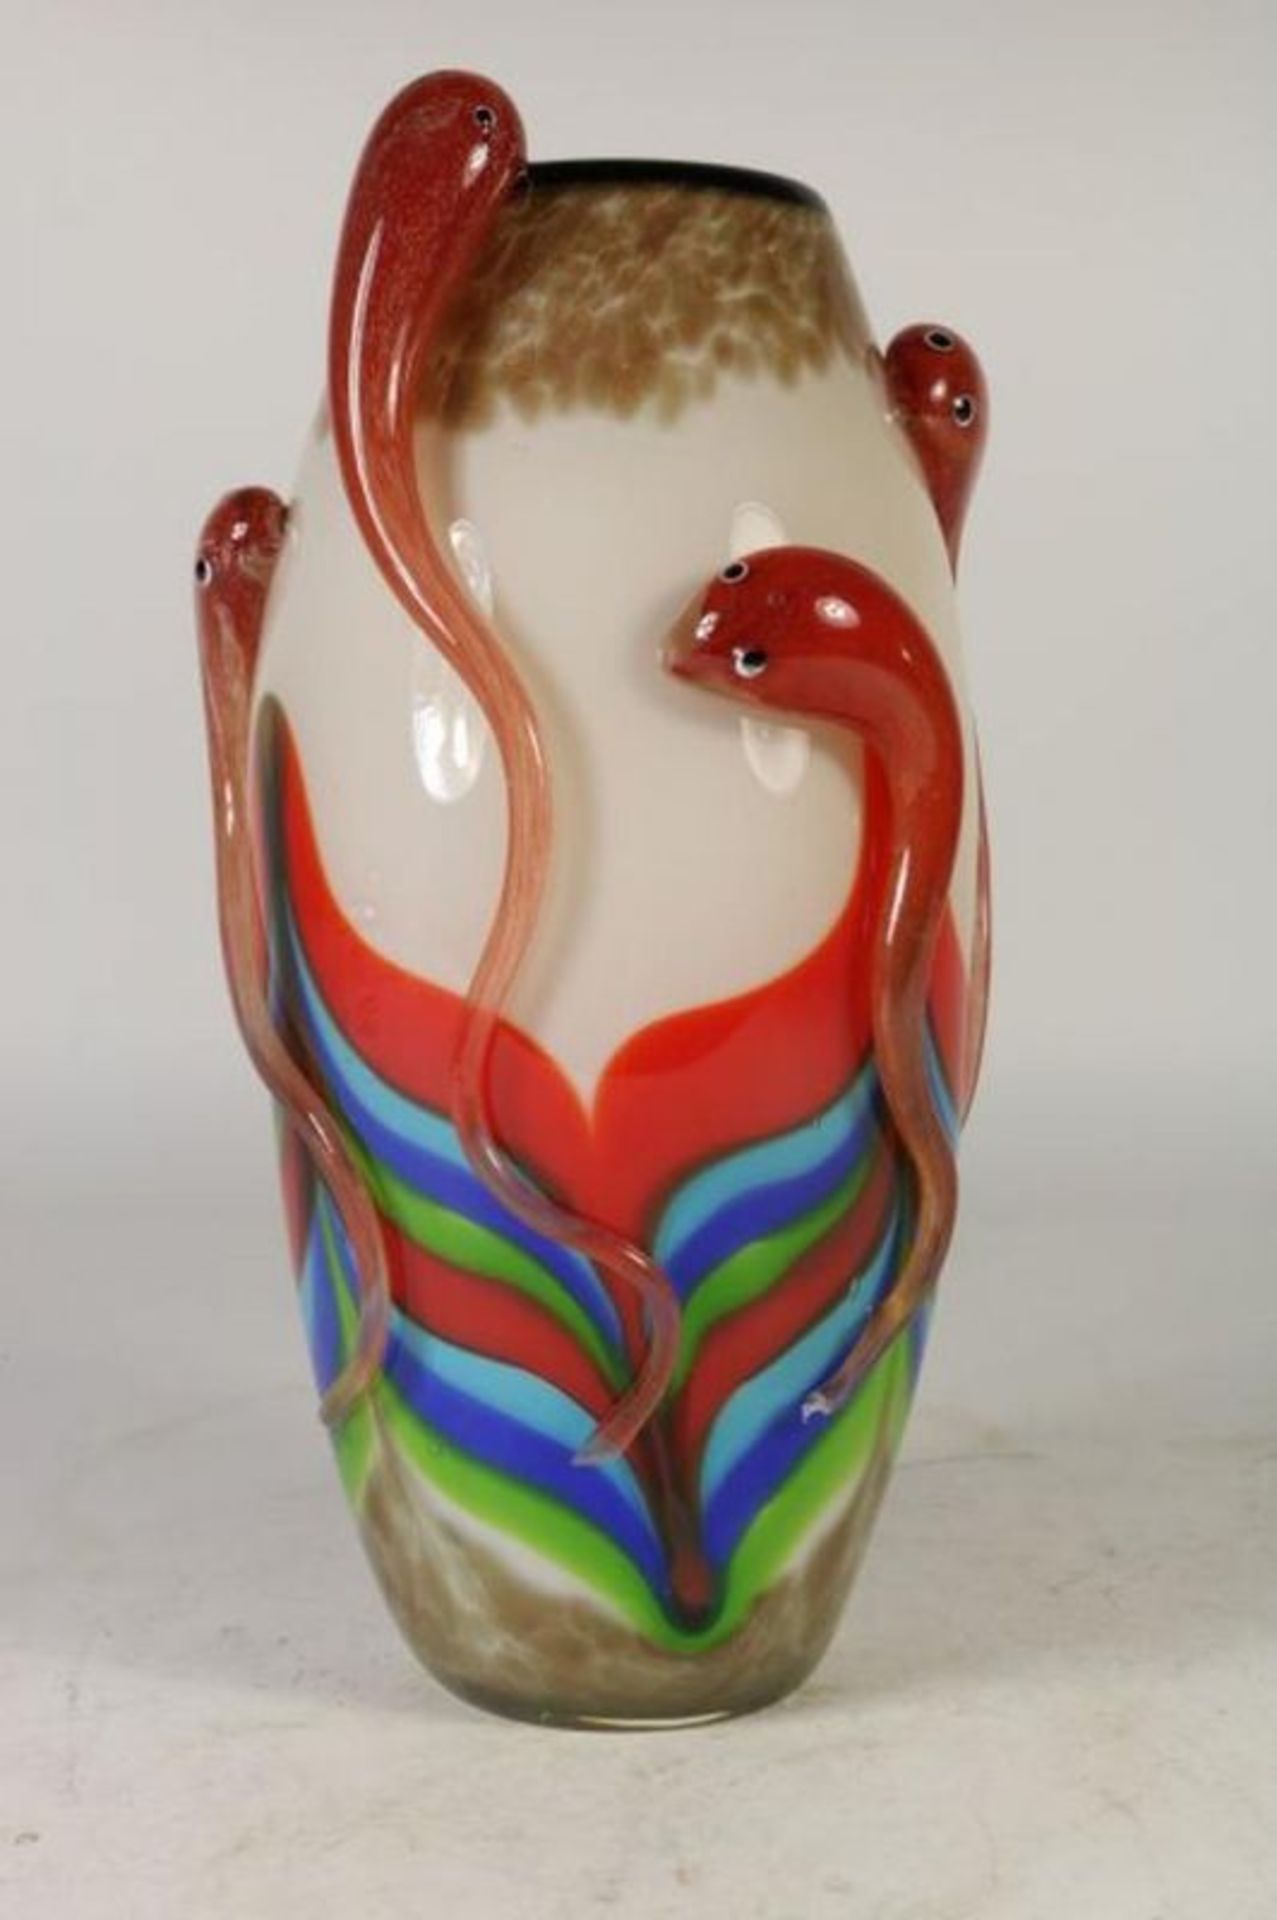 Polychroom dik glazen vaas met relief van slangen, h. 28 cm. Polychrome glass vase with relief of